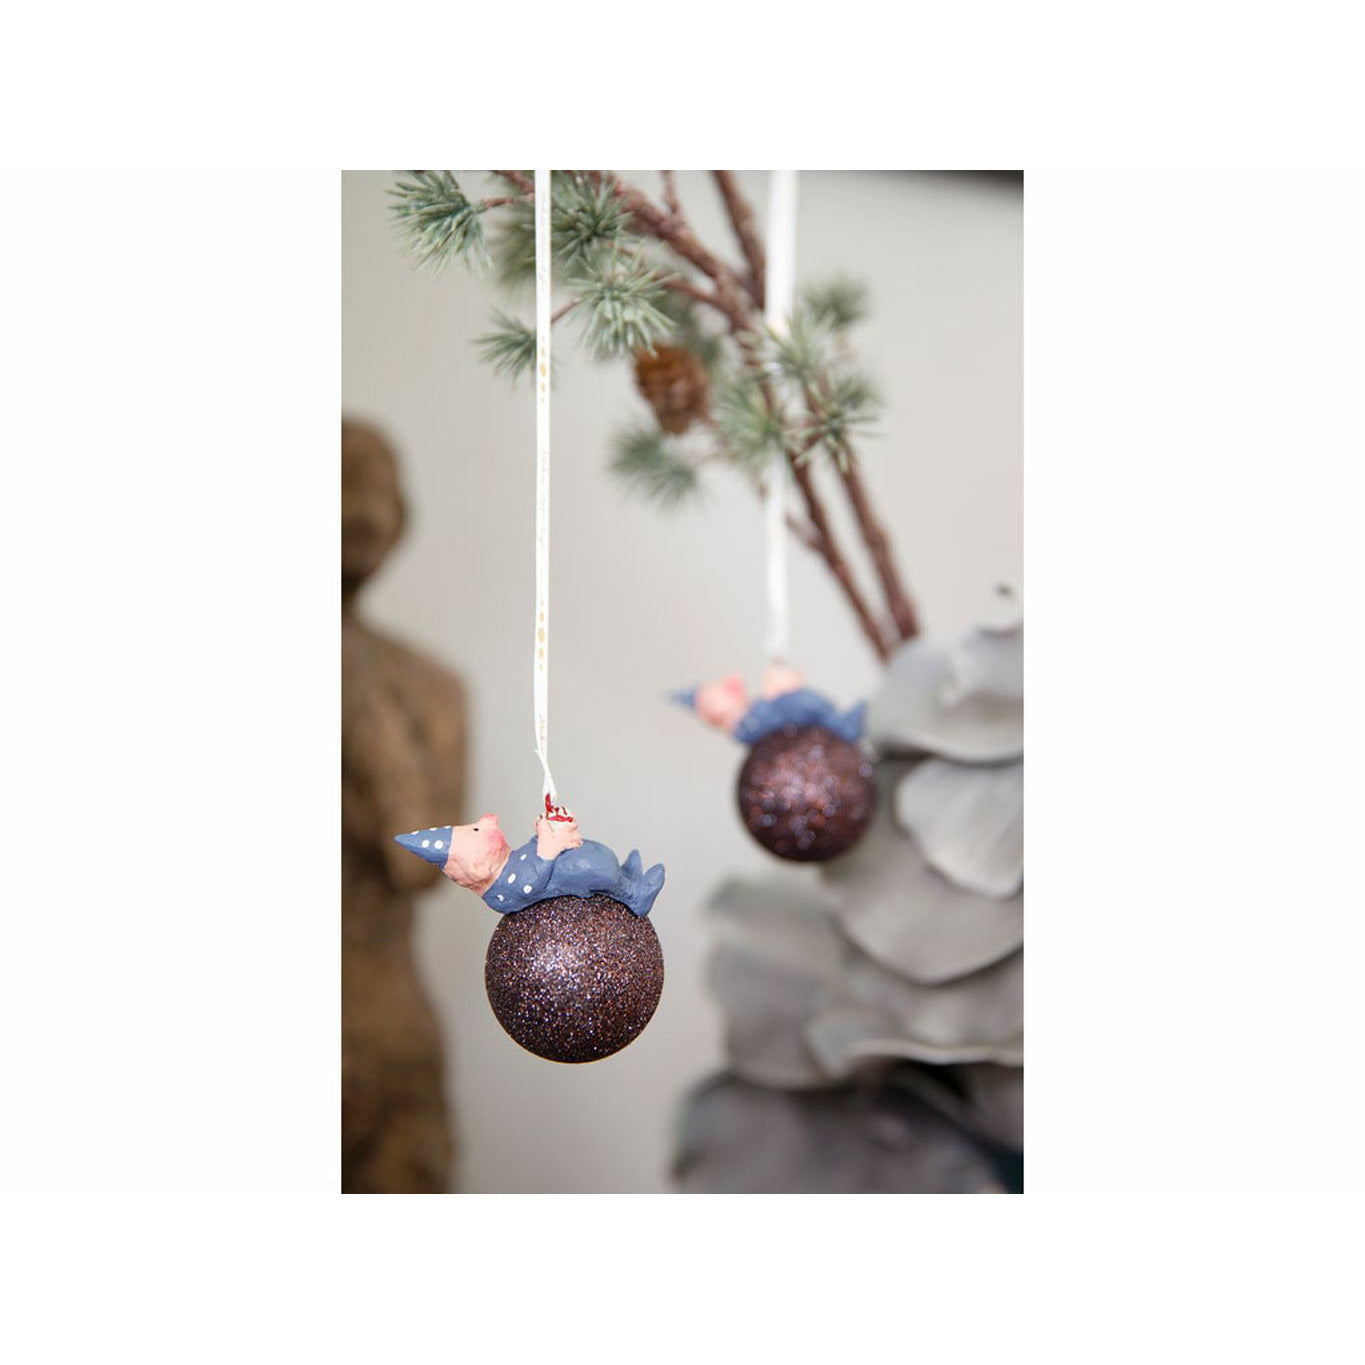 Medusa Kööpenhamina ensimmäinen joulupoika joulukuusi pallo